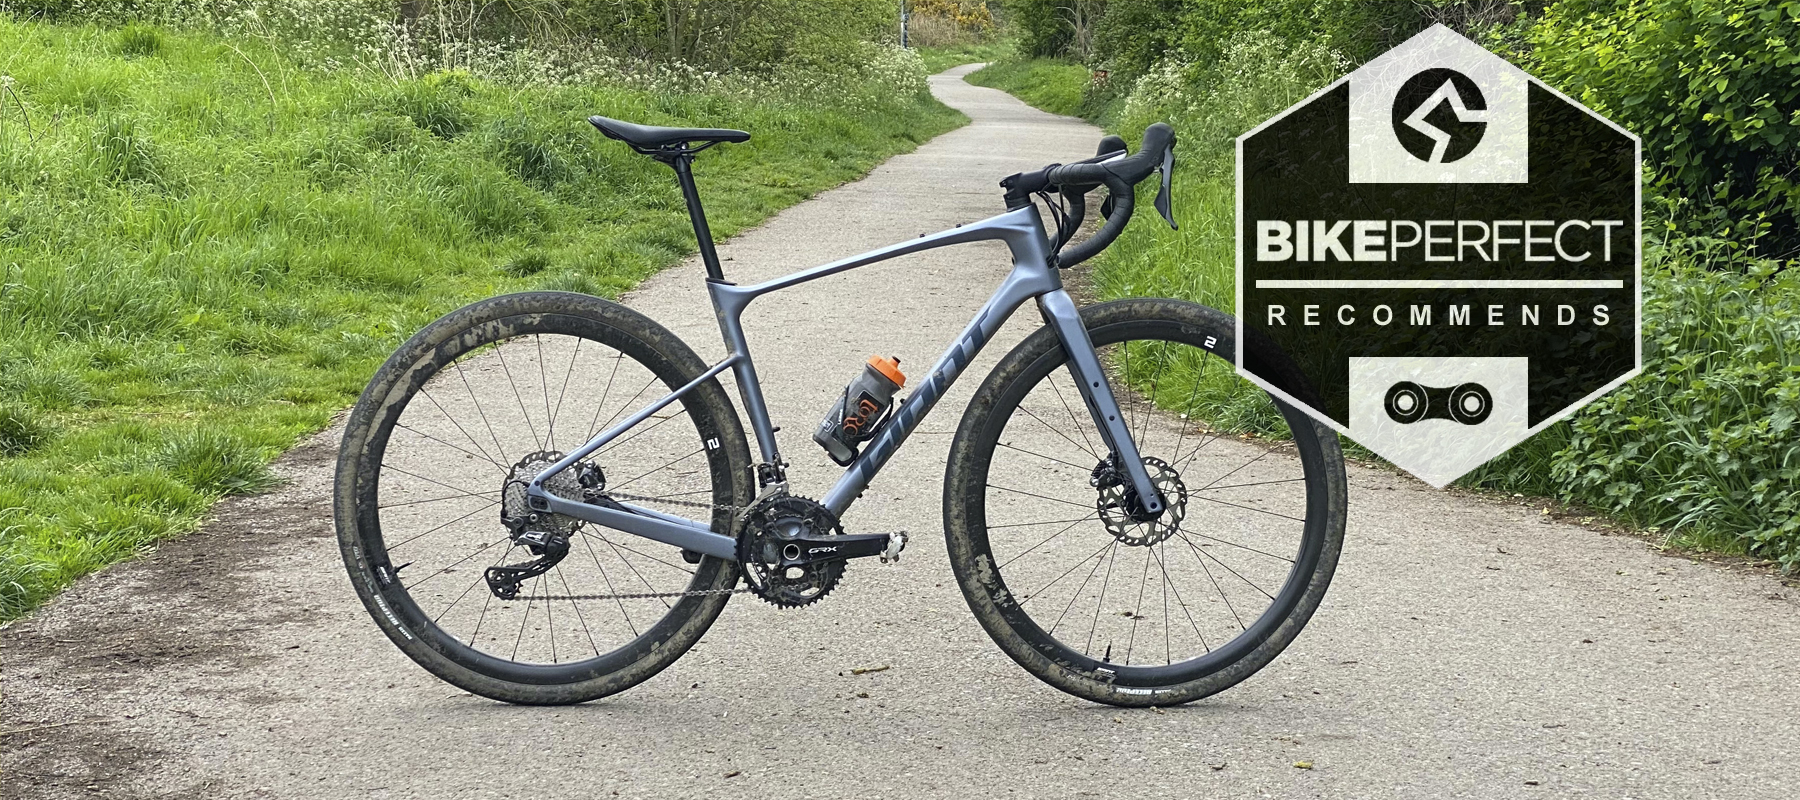 Giant Revolt Advanced 0 gravel bike review BikePerfect